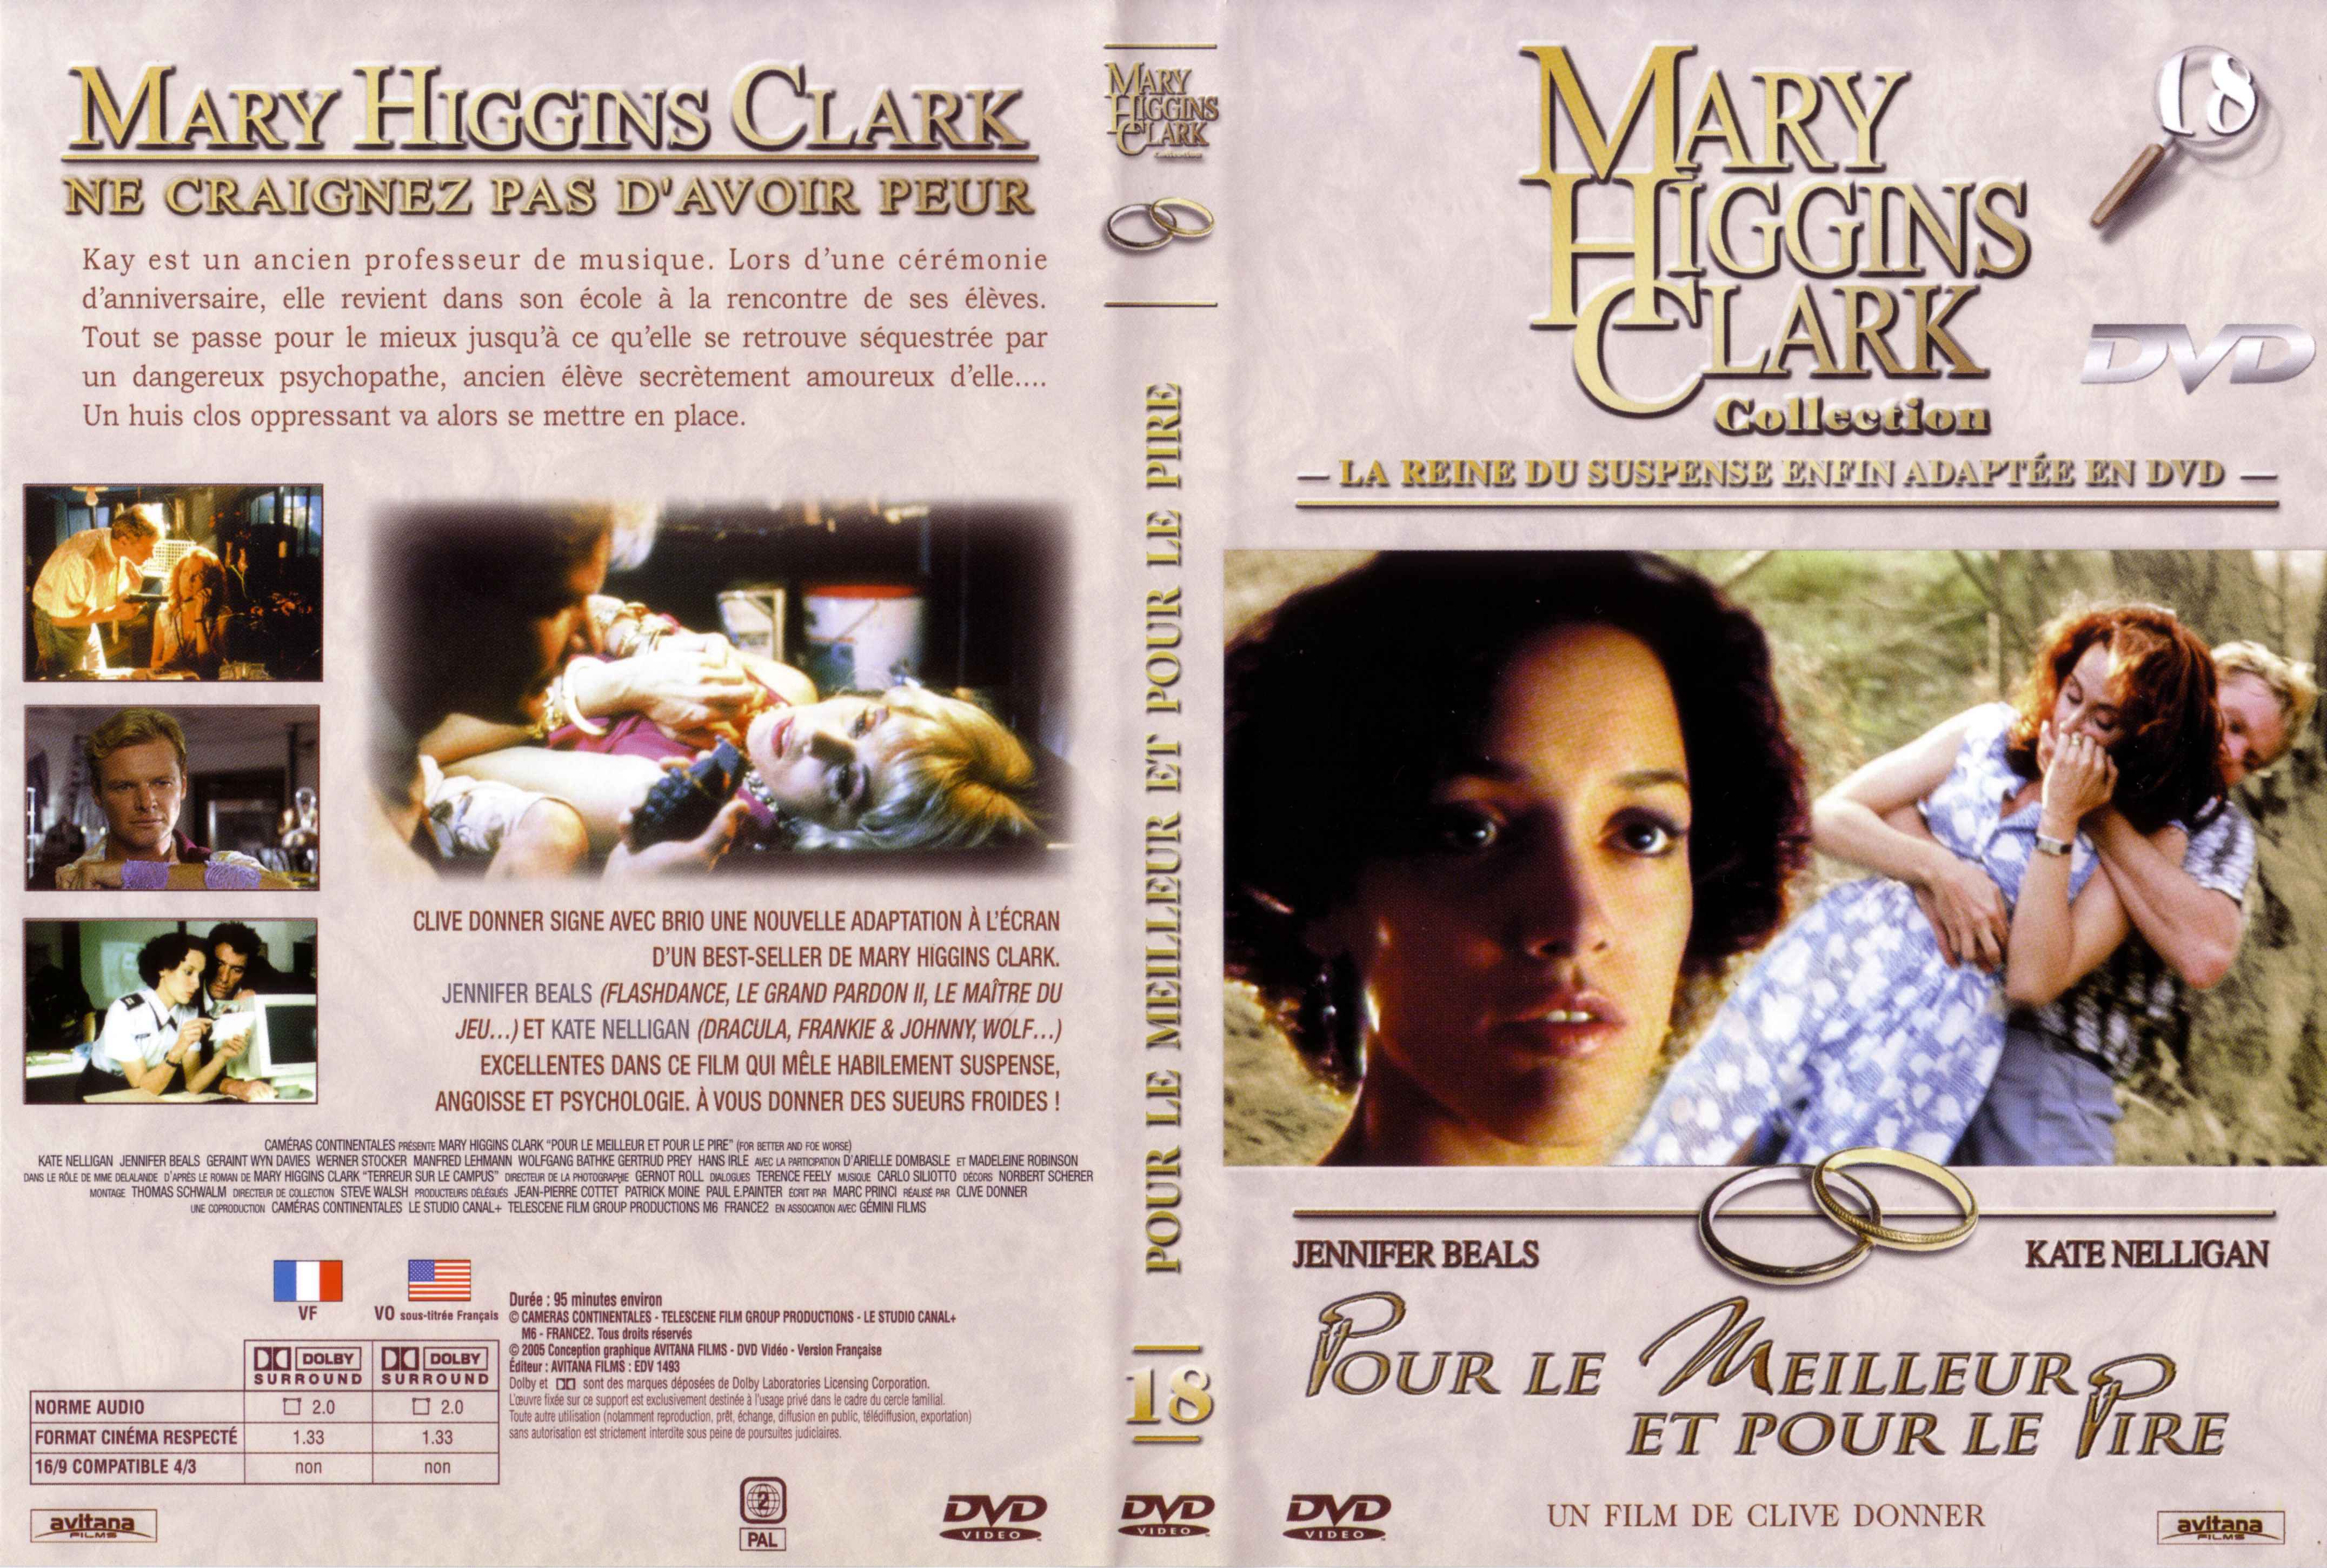 Jaquette DVD Mary Higgins Clark vol 18 - Pour le meilleur et pour le pire